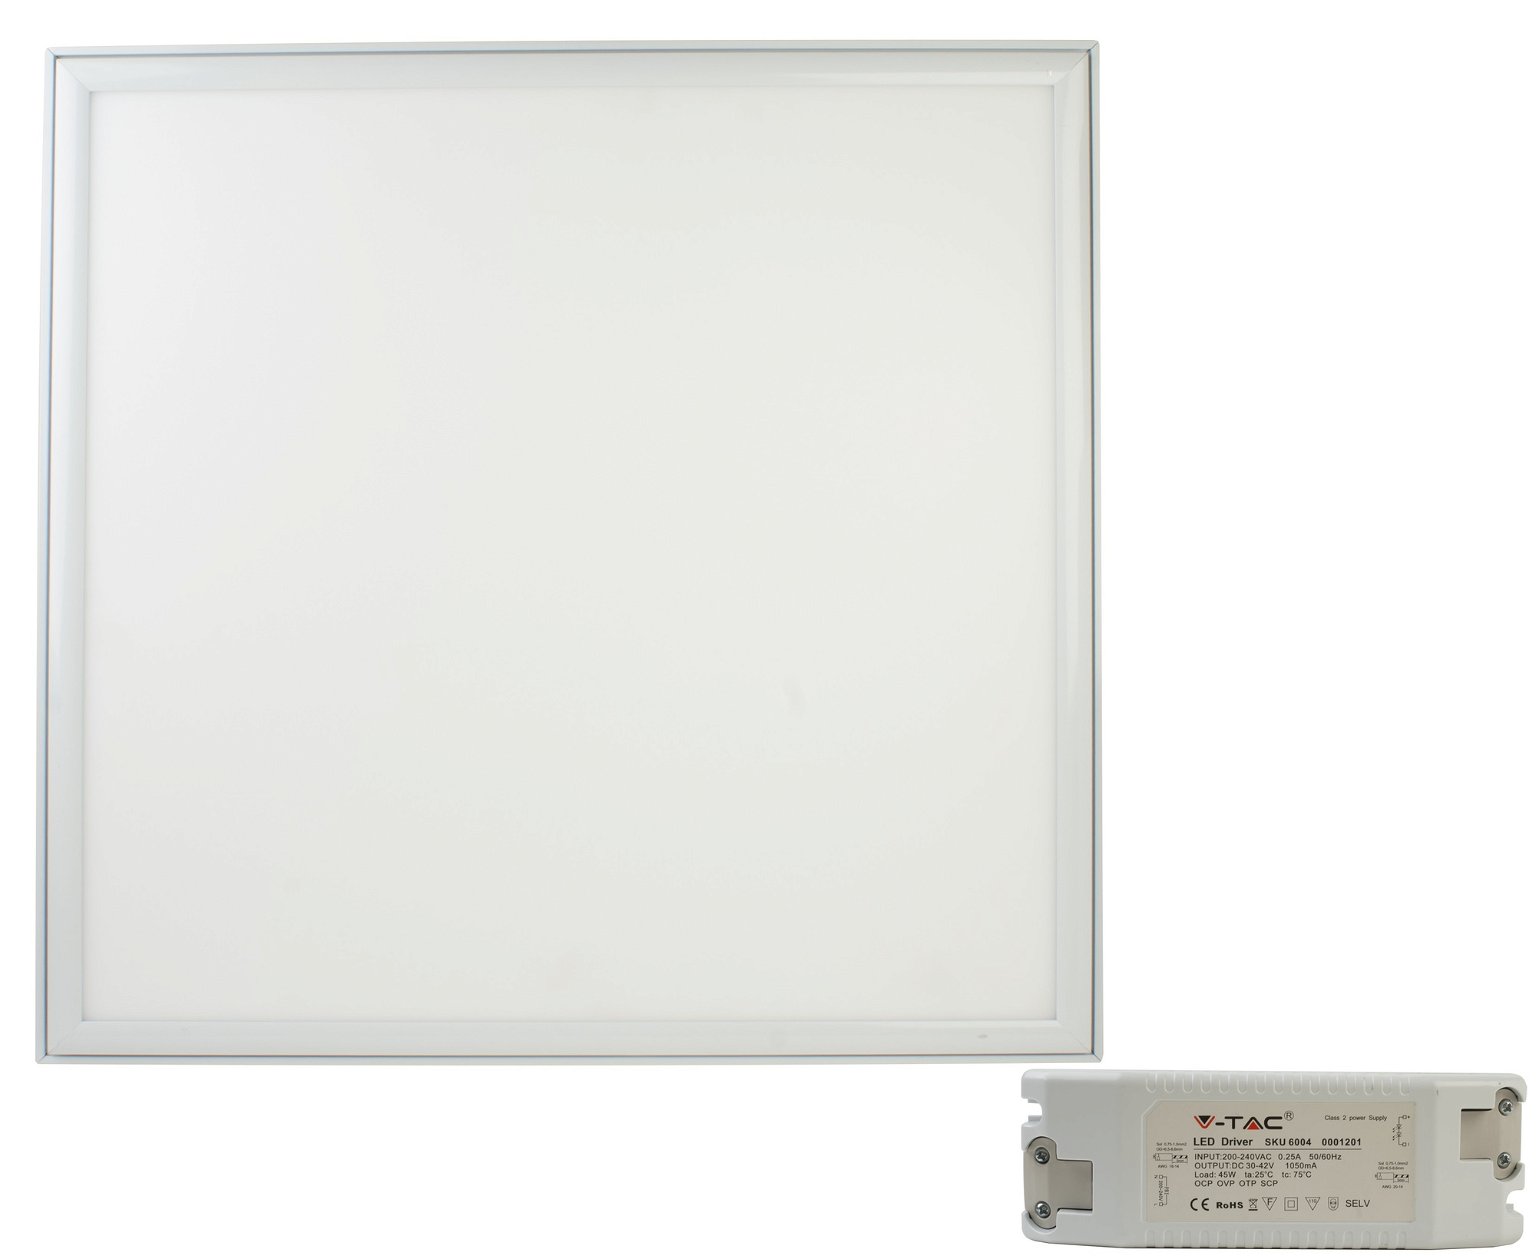 Įleidžiama LED panelė su transformatoriumi V-TAC, 29 W